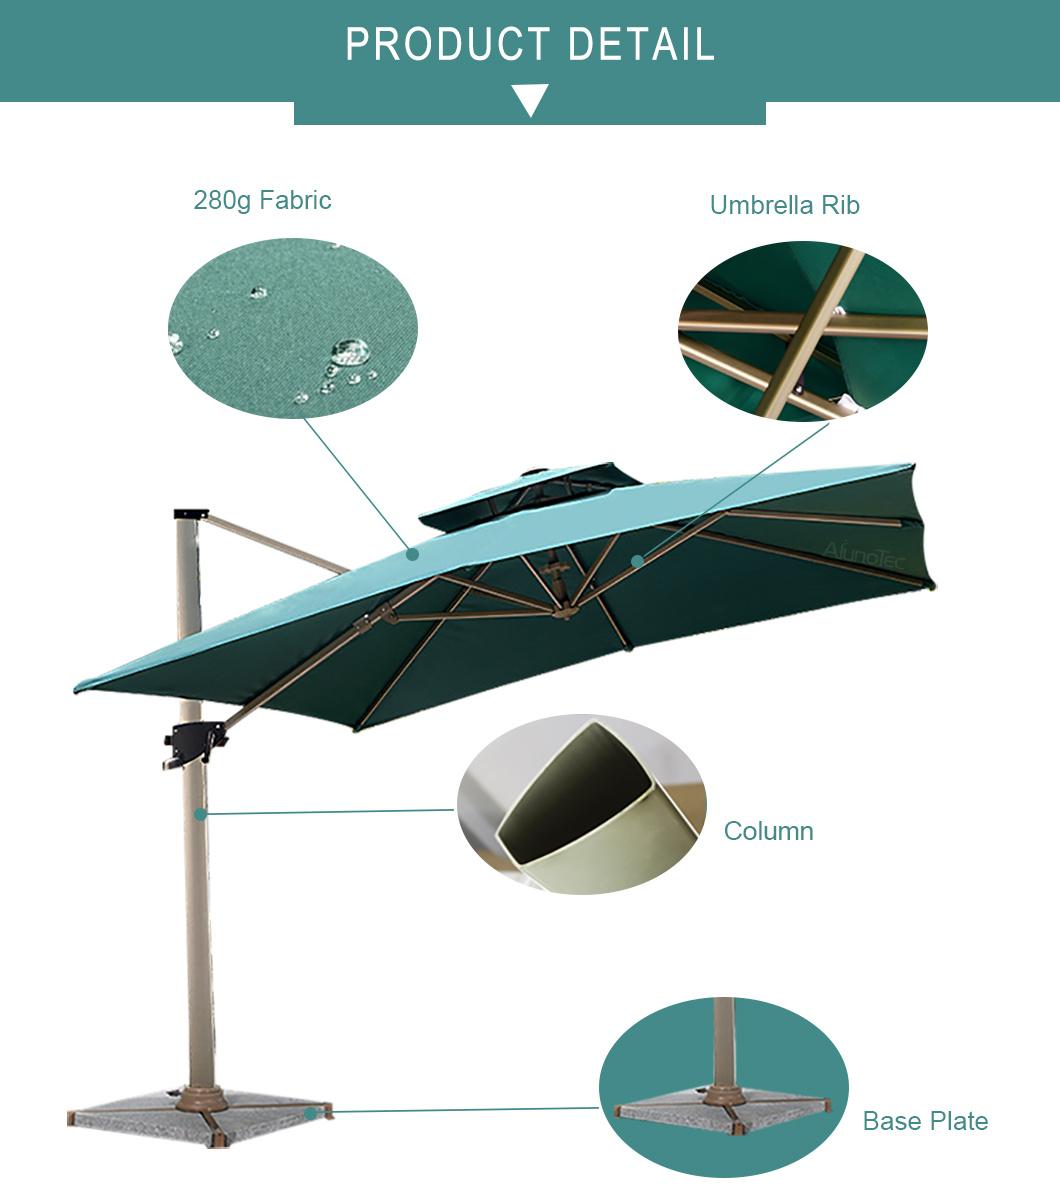 Outdoor Roman Umbrella Patio Cantilever Canopy Cover with Base